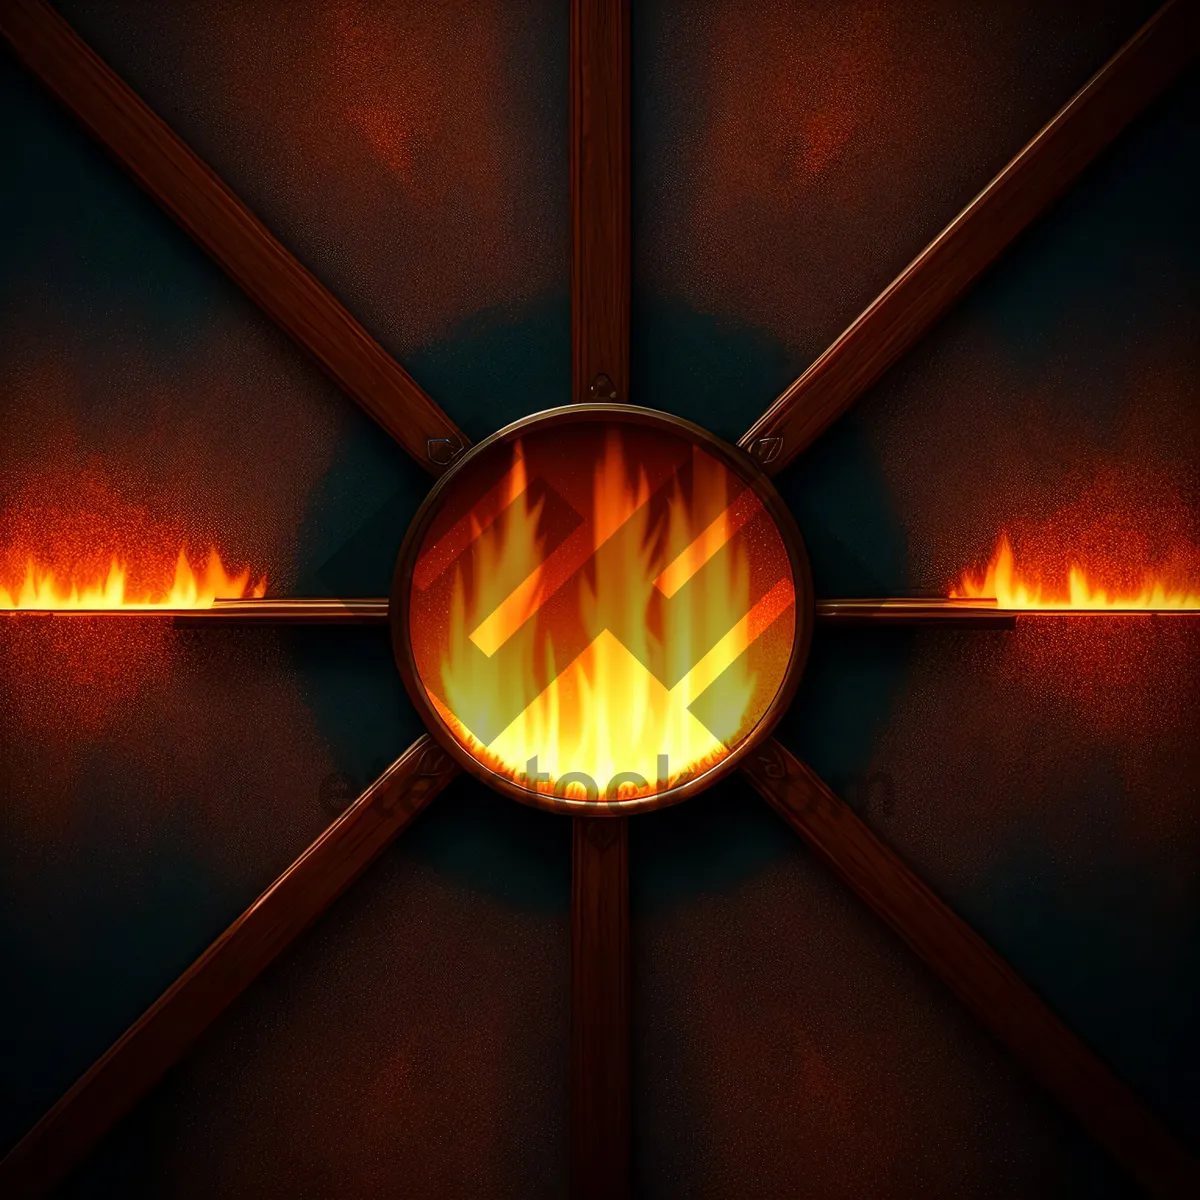 Picture of Fiery Glow: Digital Fractal Art with Orange Heat